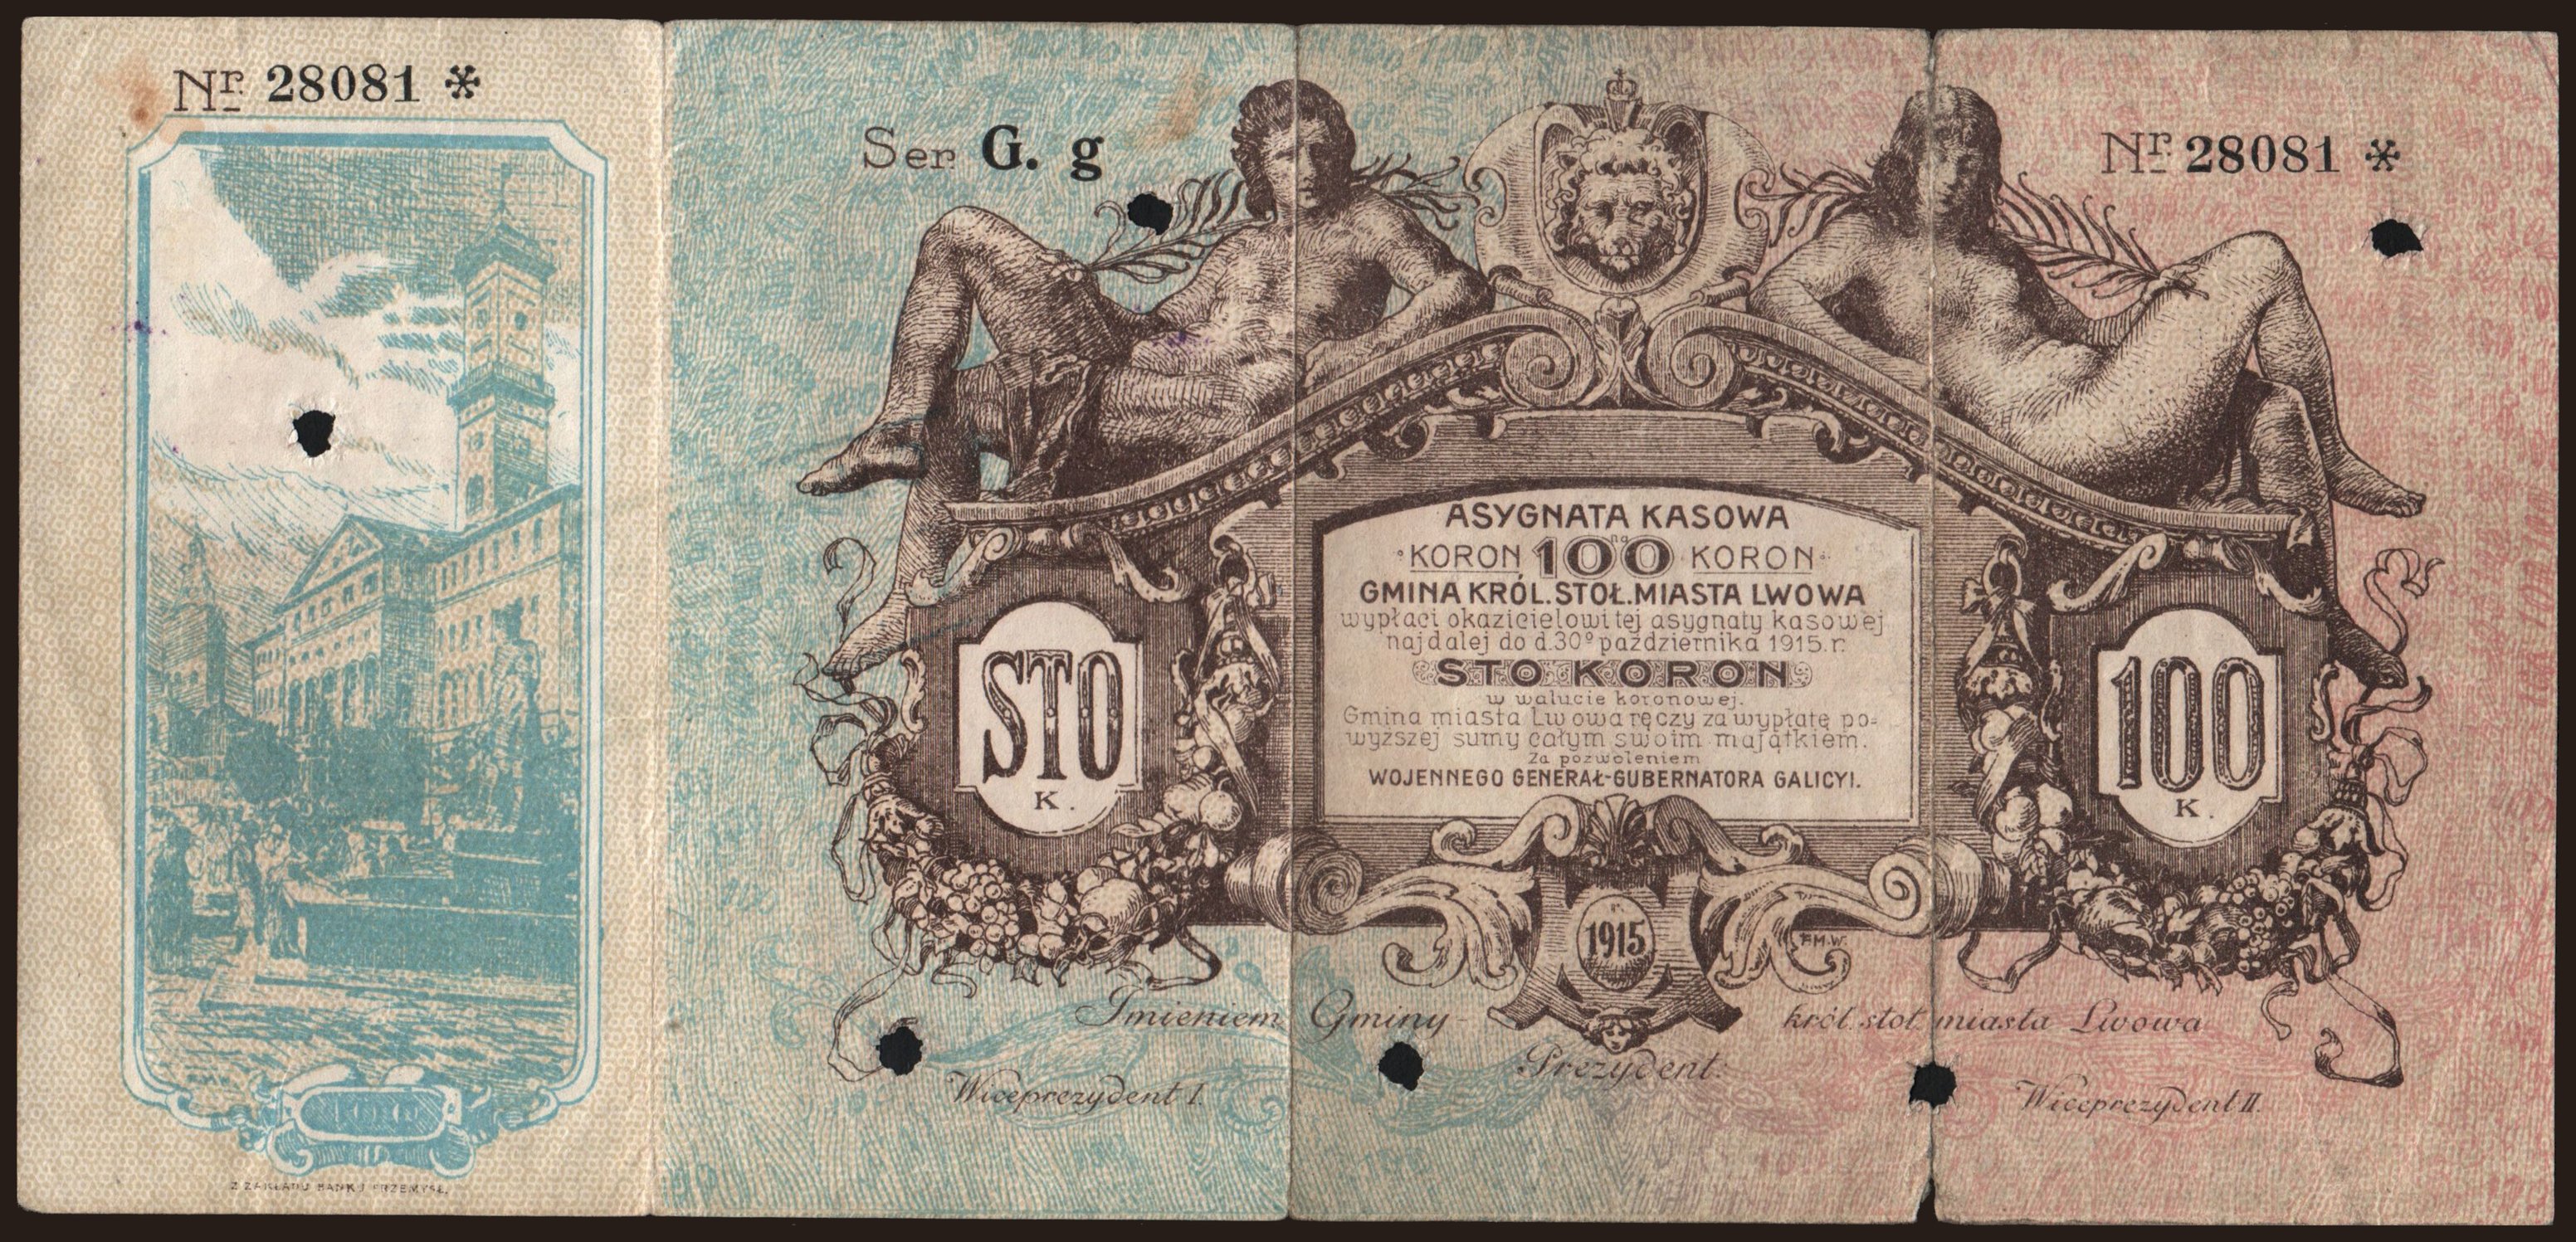 Lwow, 100 koron, 1915